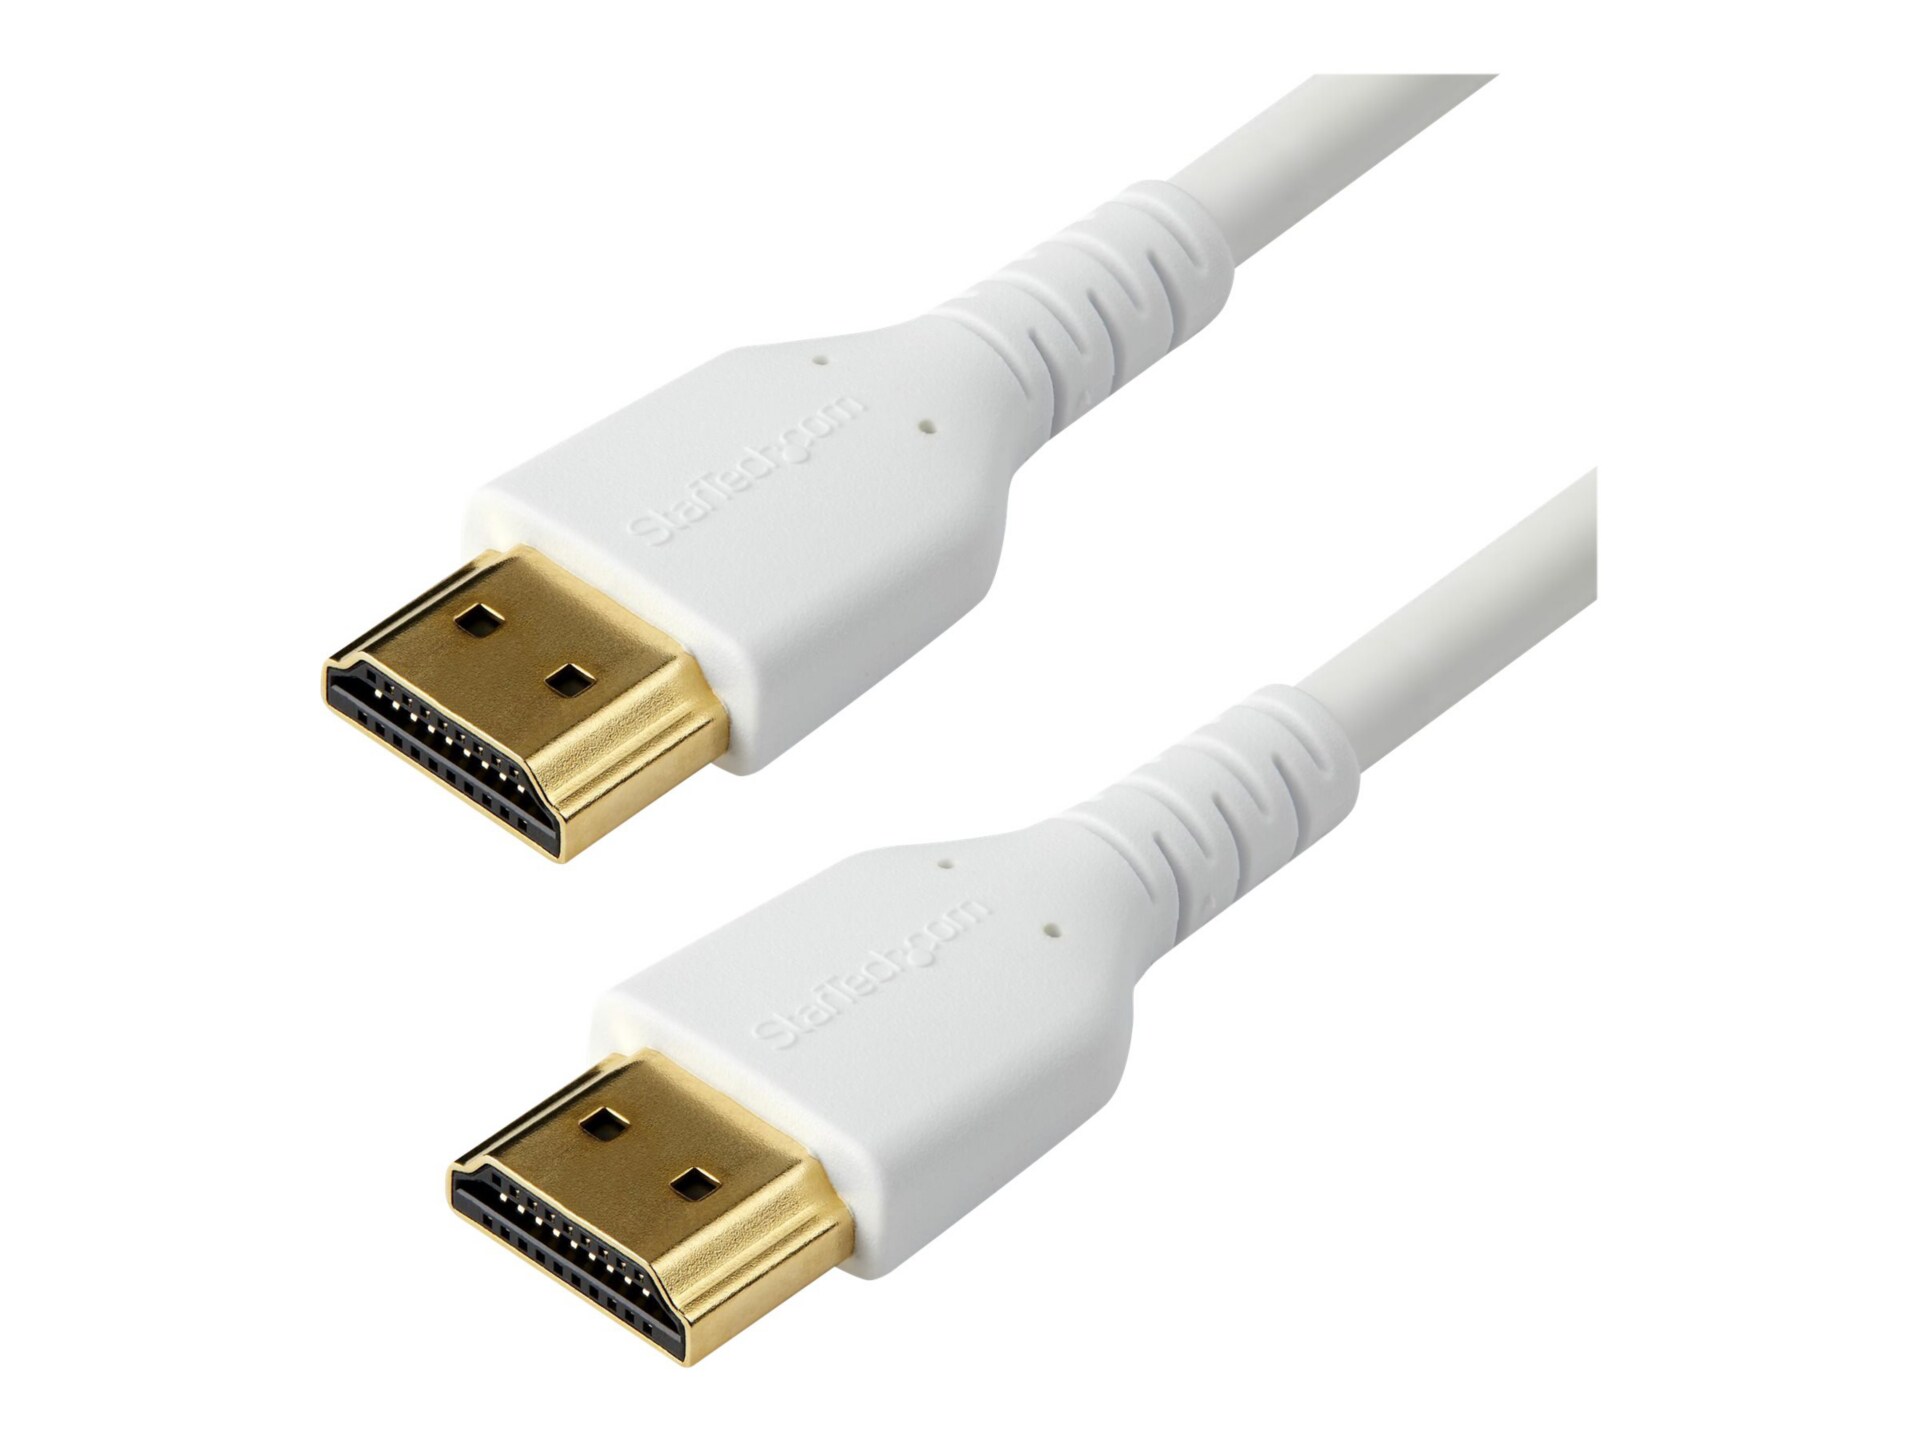 StarTech.com 1m Premium HDMI 2.0 Cable w/Ethernet - 3ft HDR 4K 60Hz Durable